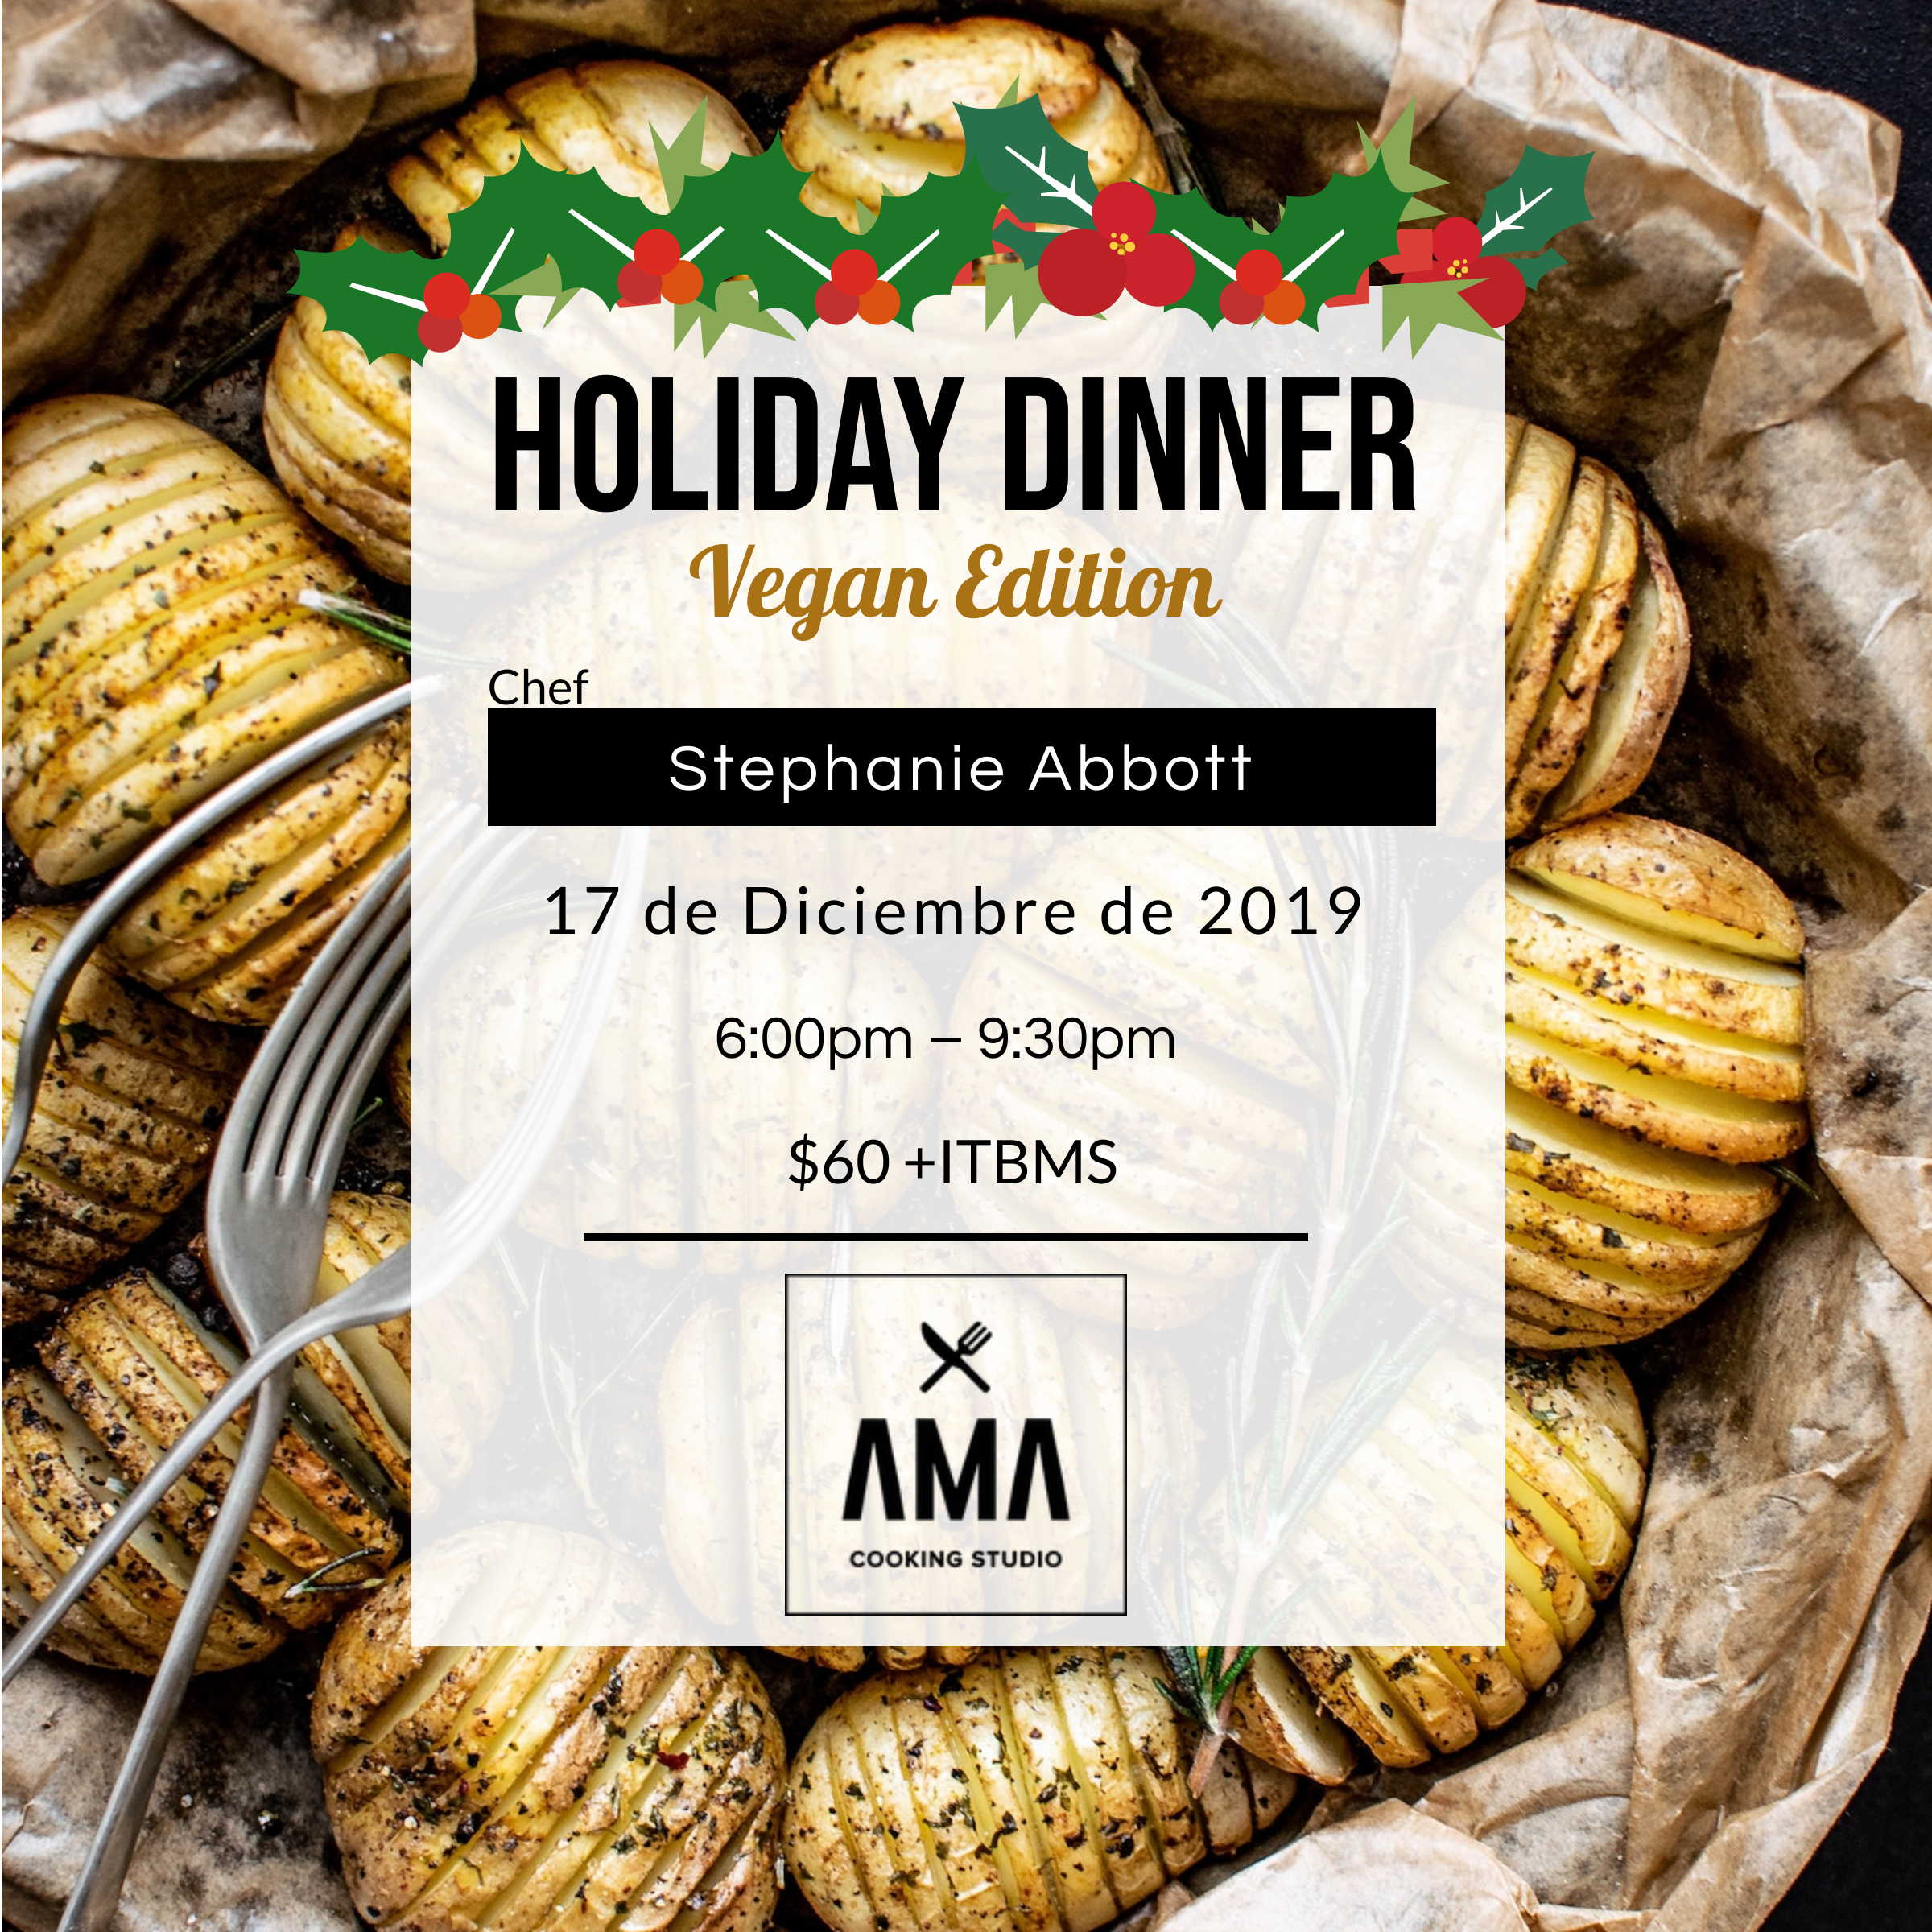 Holiday Dinner: Vegan Edition